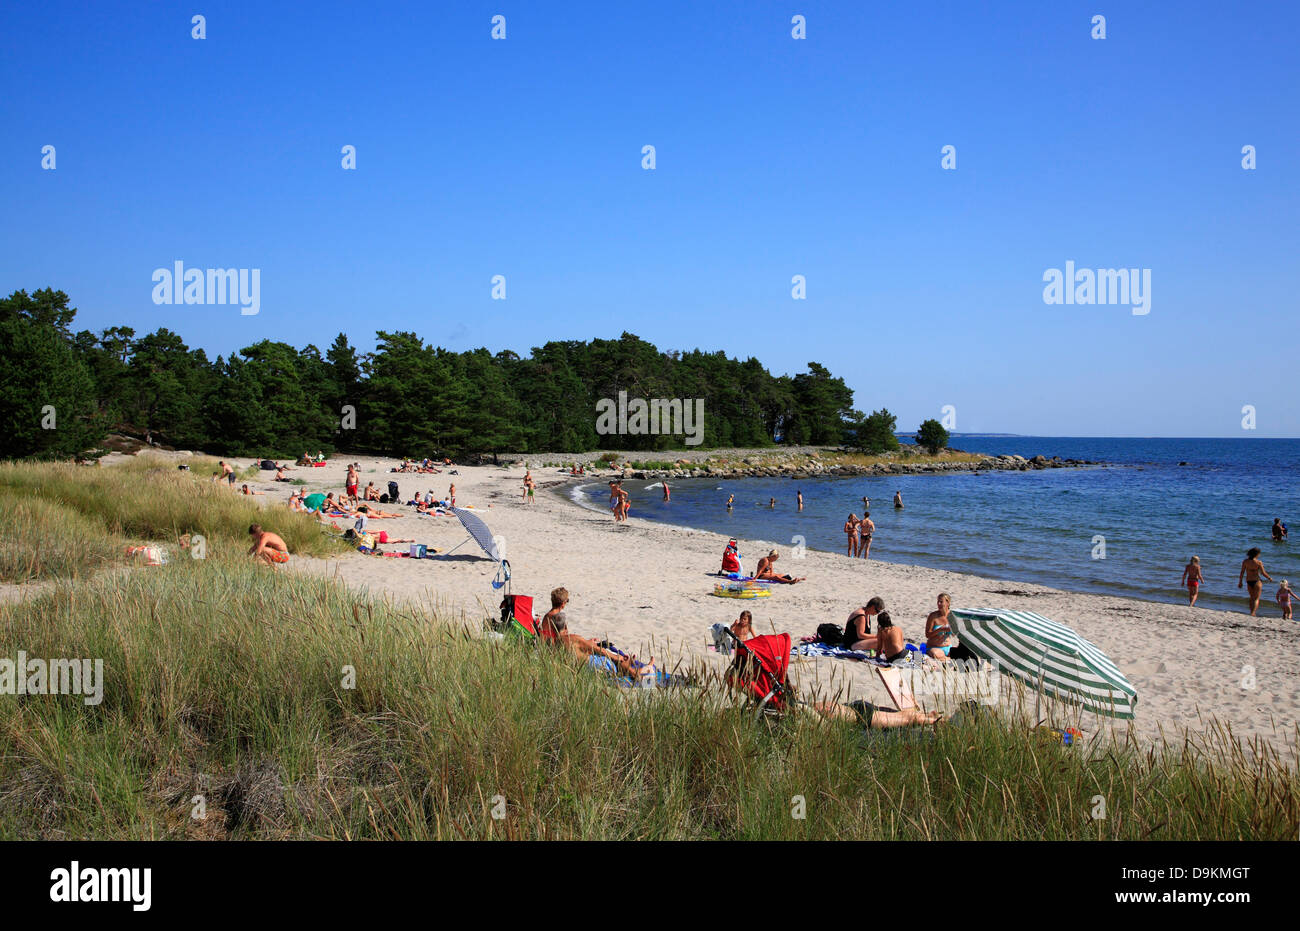 Storsand beach, Nattaroe, île de l'archipel de Stockholm, côte de la mer Baltique, la Suède, Scandinavie Banque D'Images